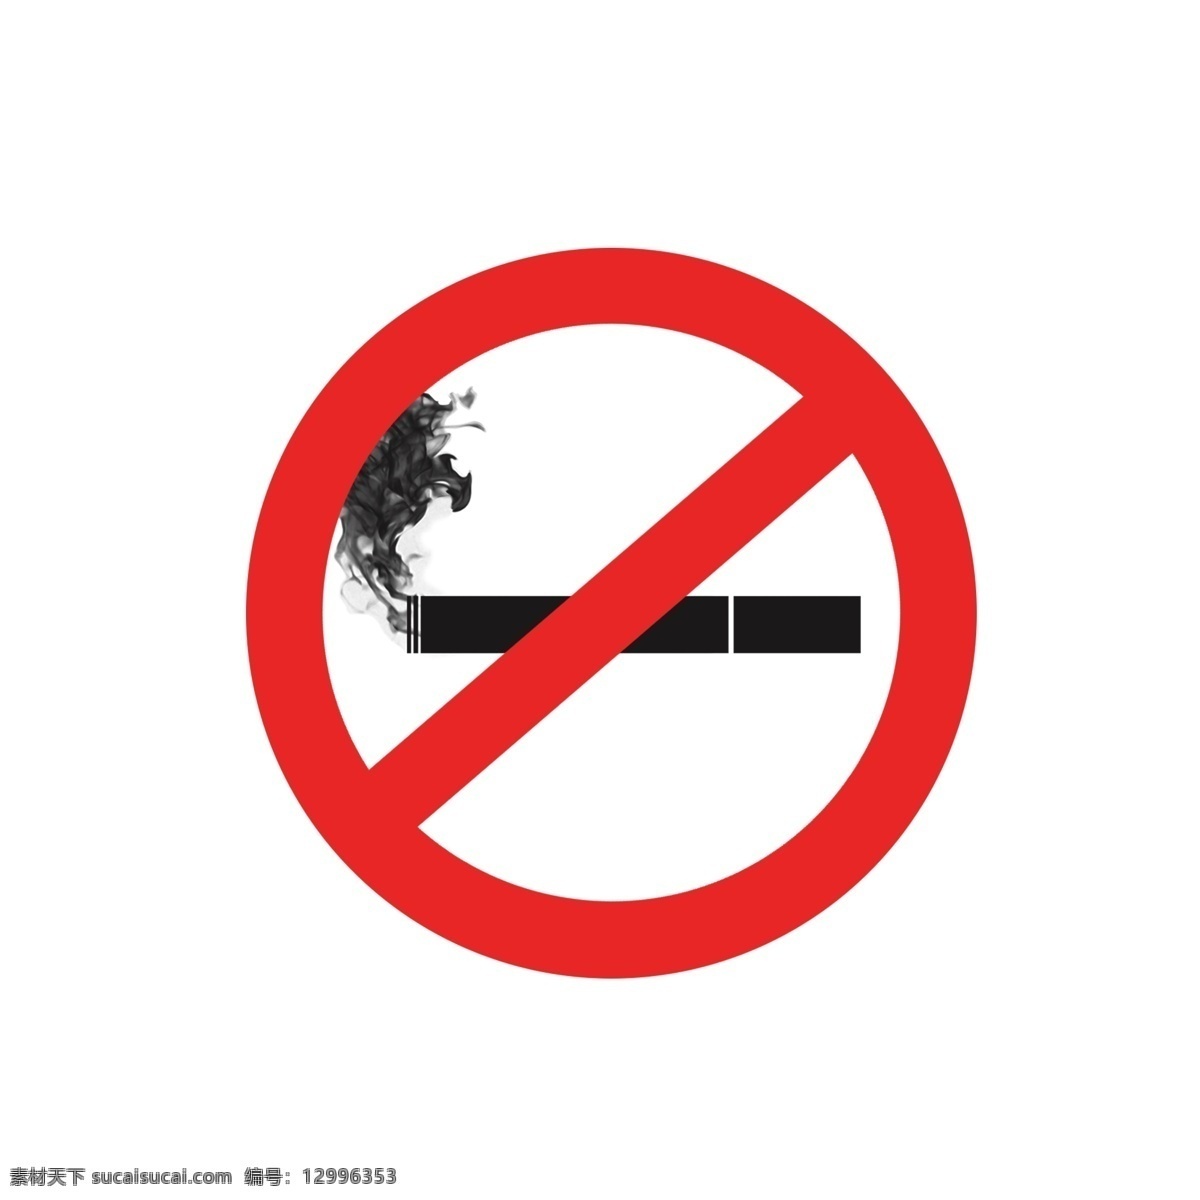 禁止吸烟标志 红色 香烟 图标 png素材